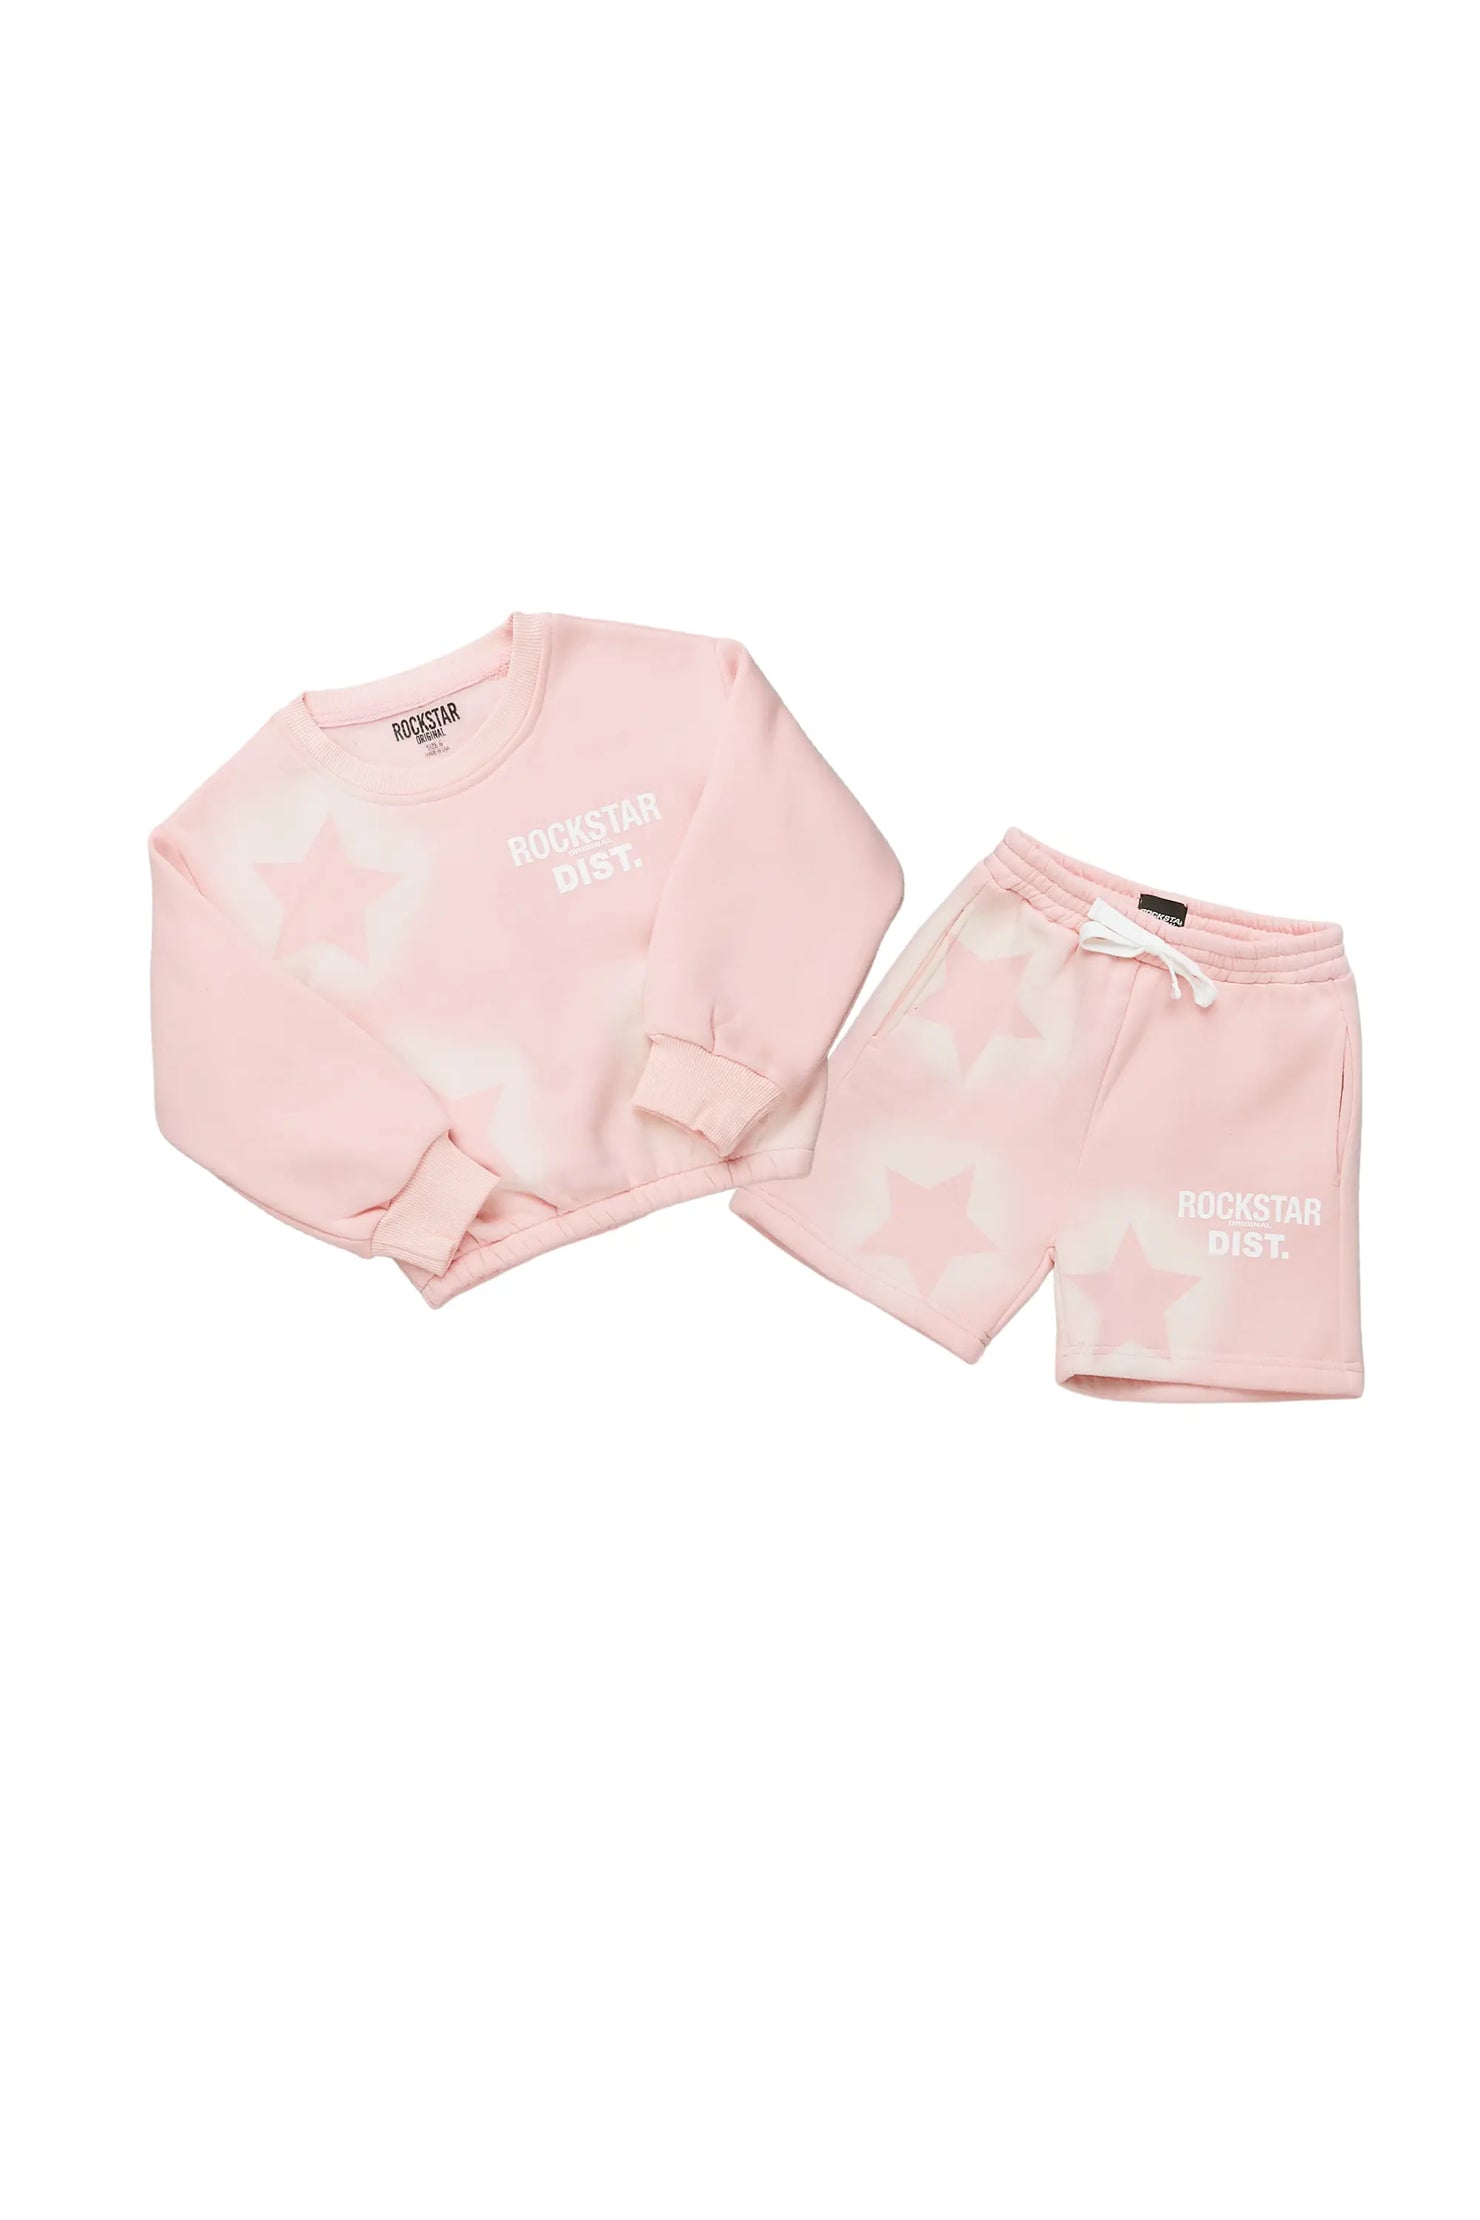 Girls Dally Light Pink Crop Top Short Set